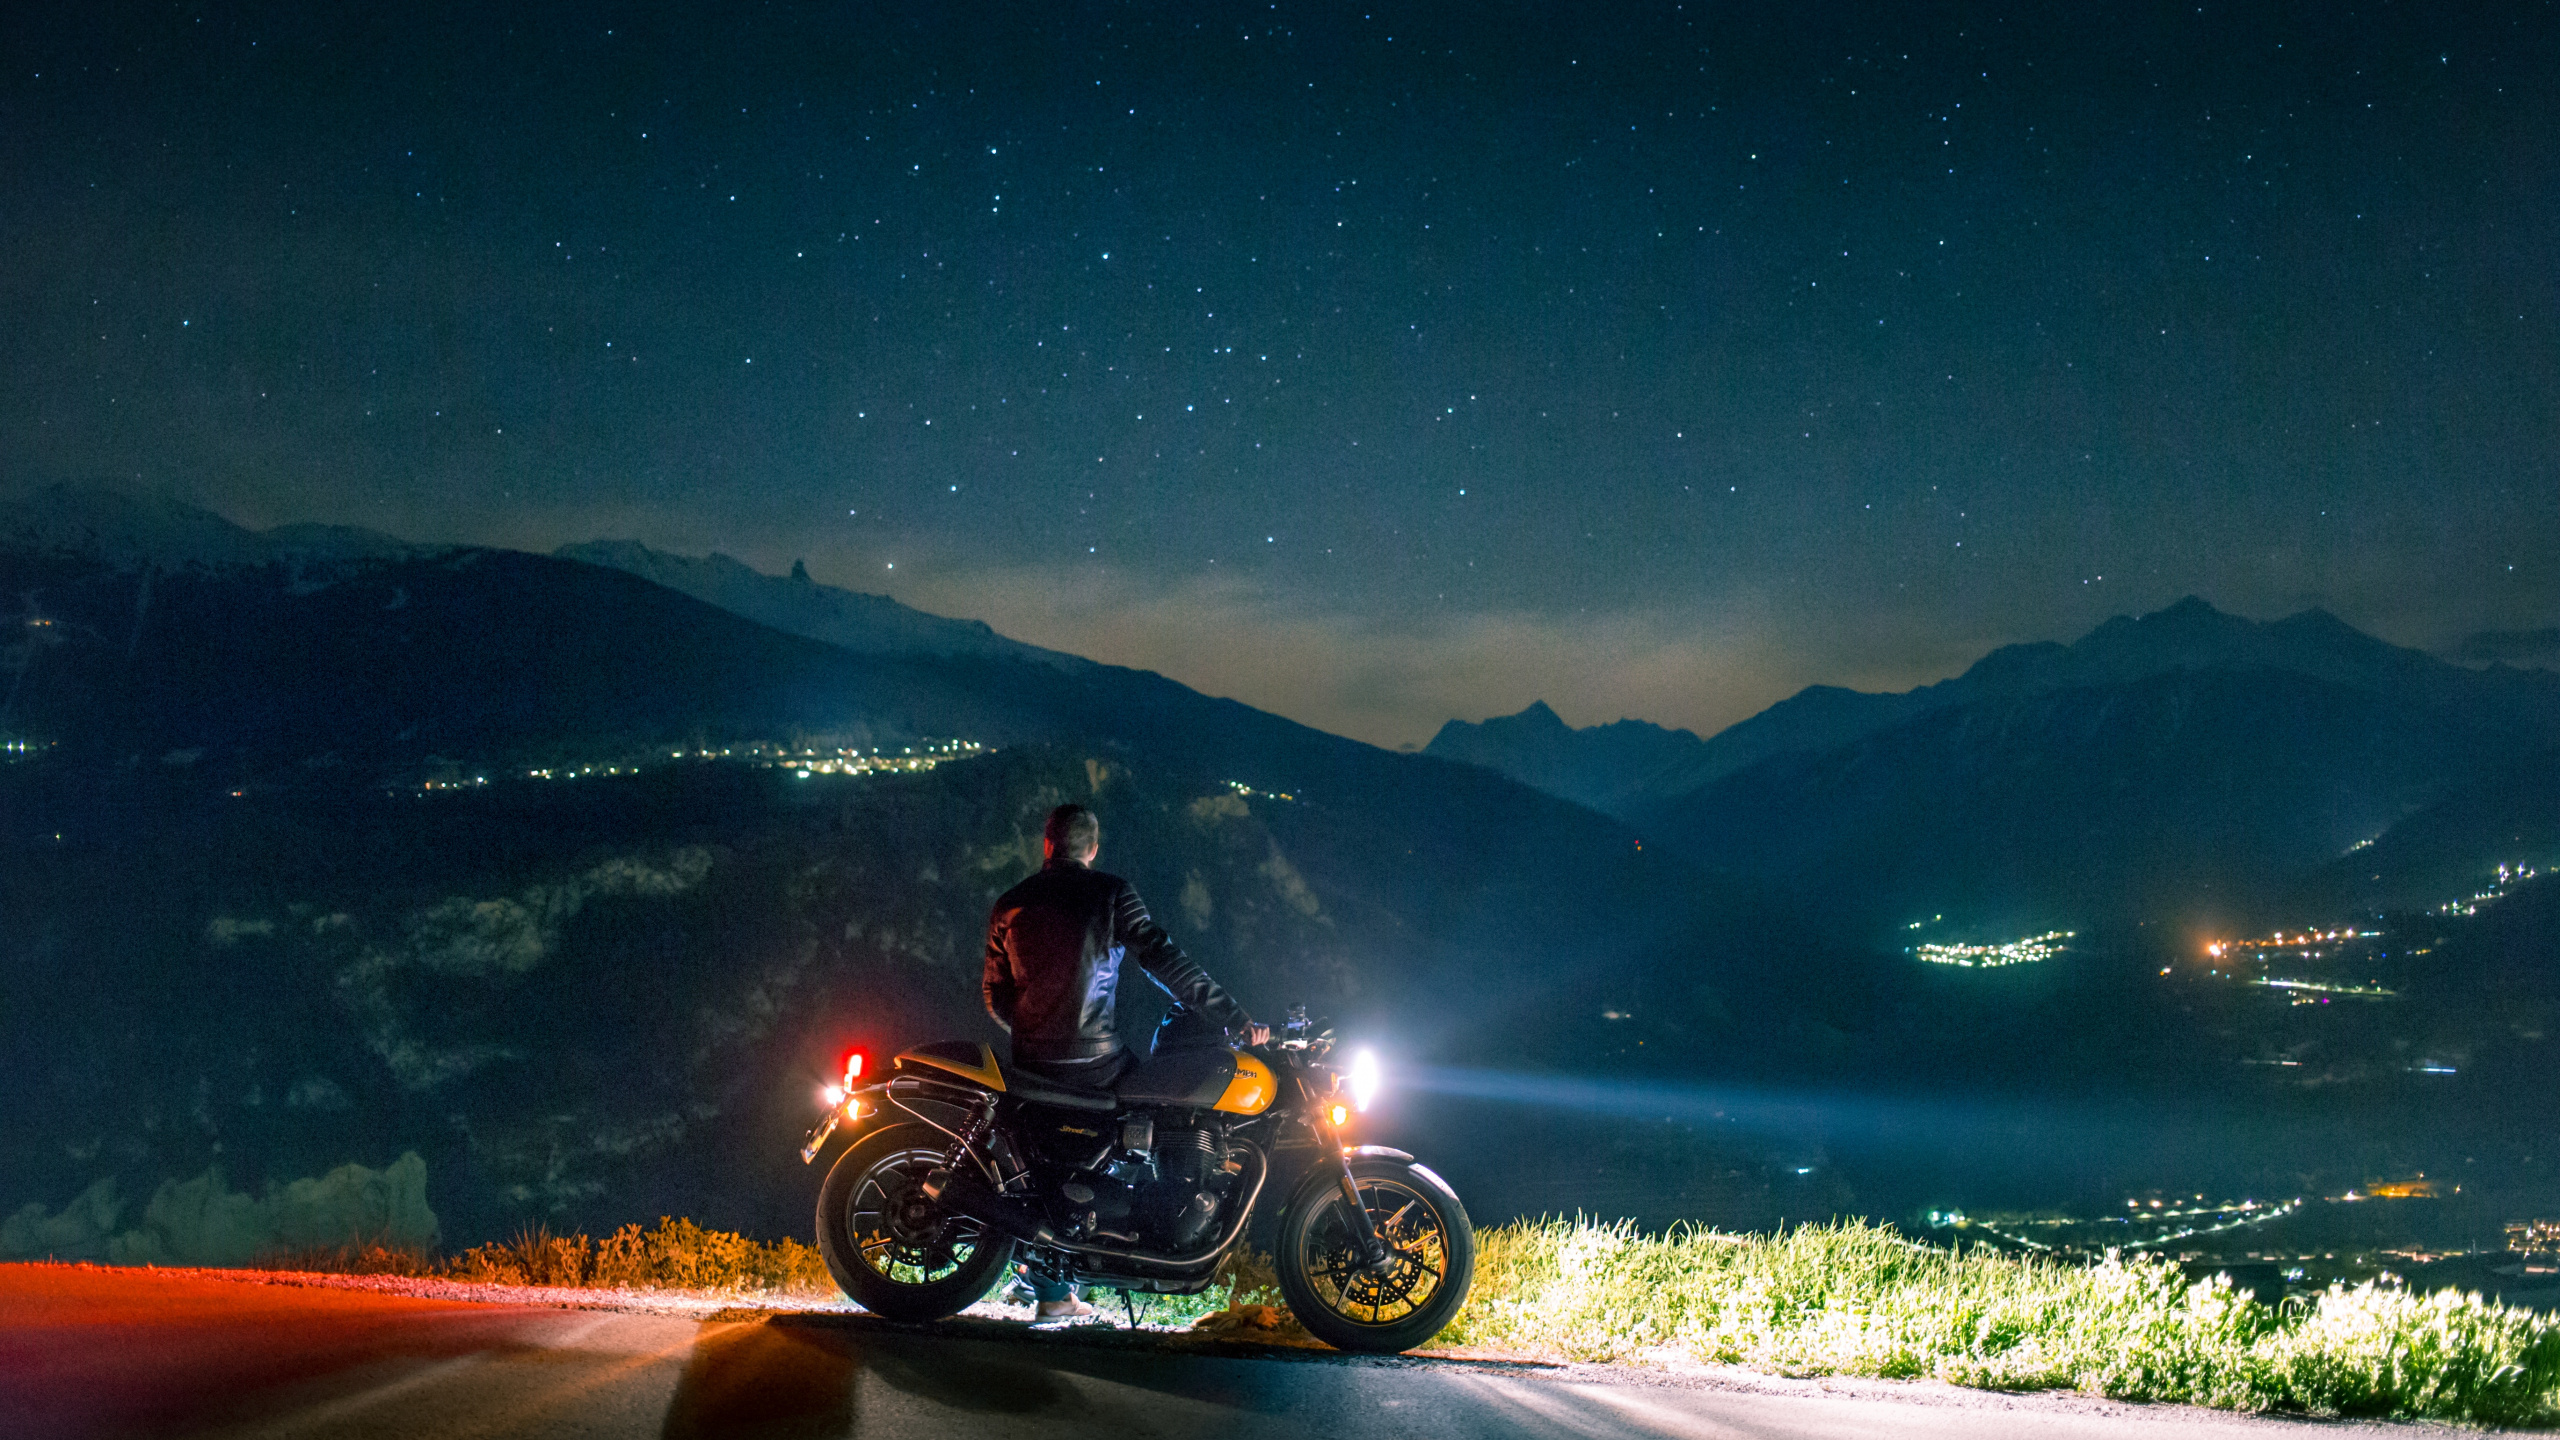 Homme Monté Sur Moto Sur Route Pendant la Nuit. Wallpaper in 2560x1440 Resolution